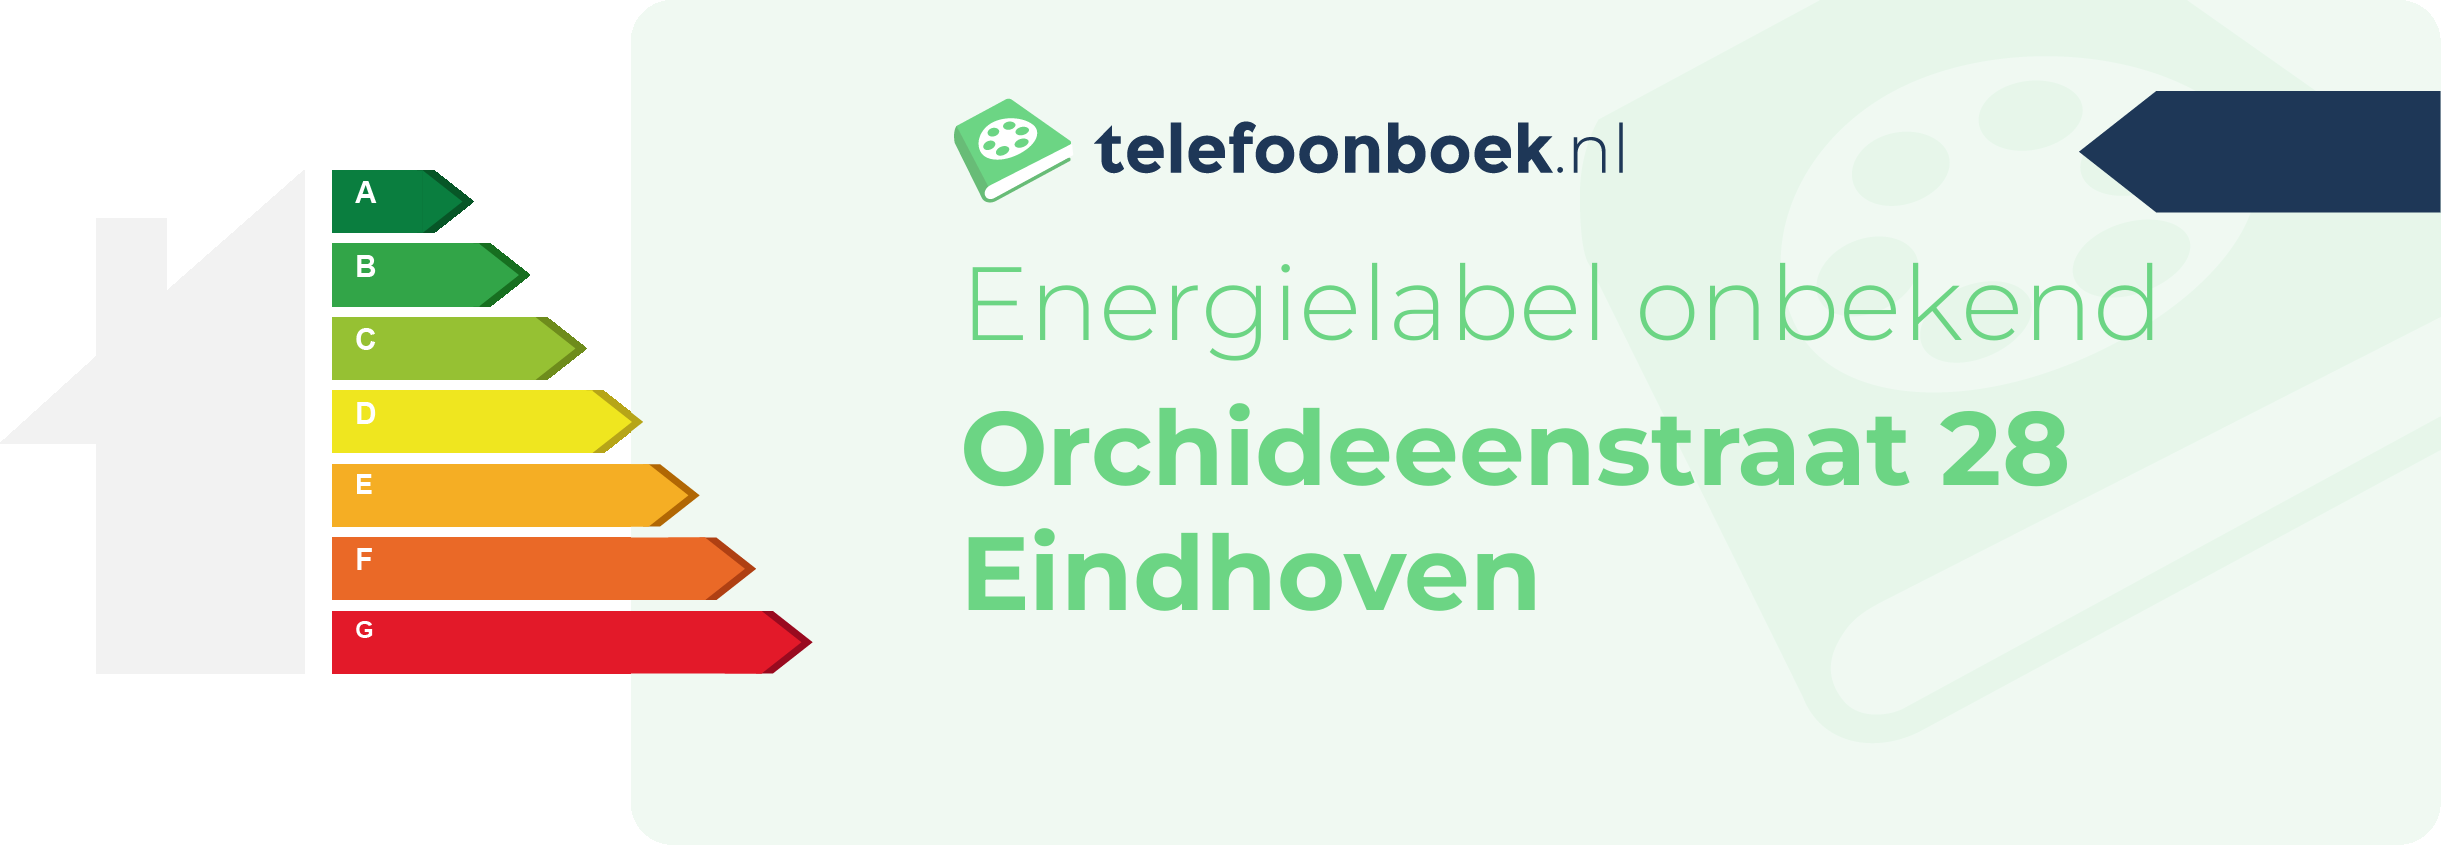 Energielabel Orchideeenstraat 28 Eindhoven